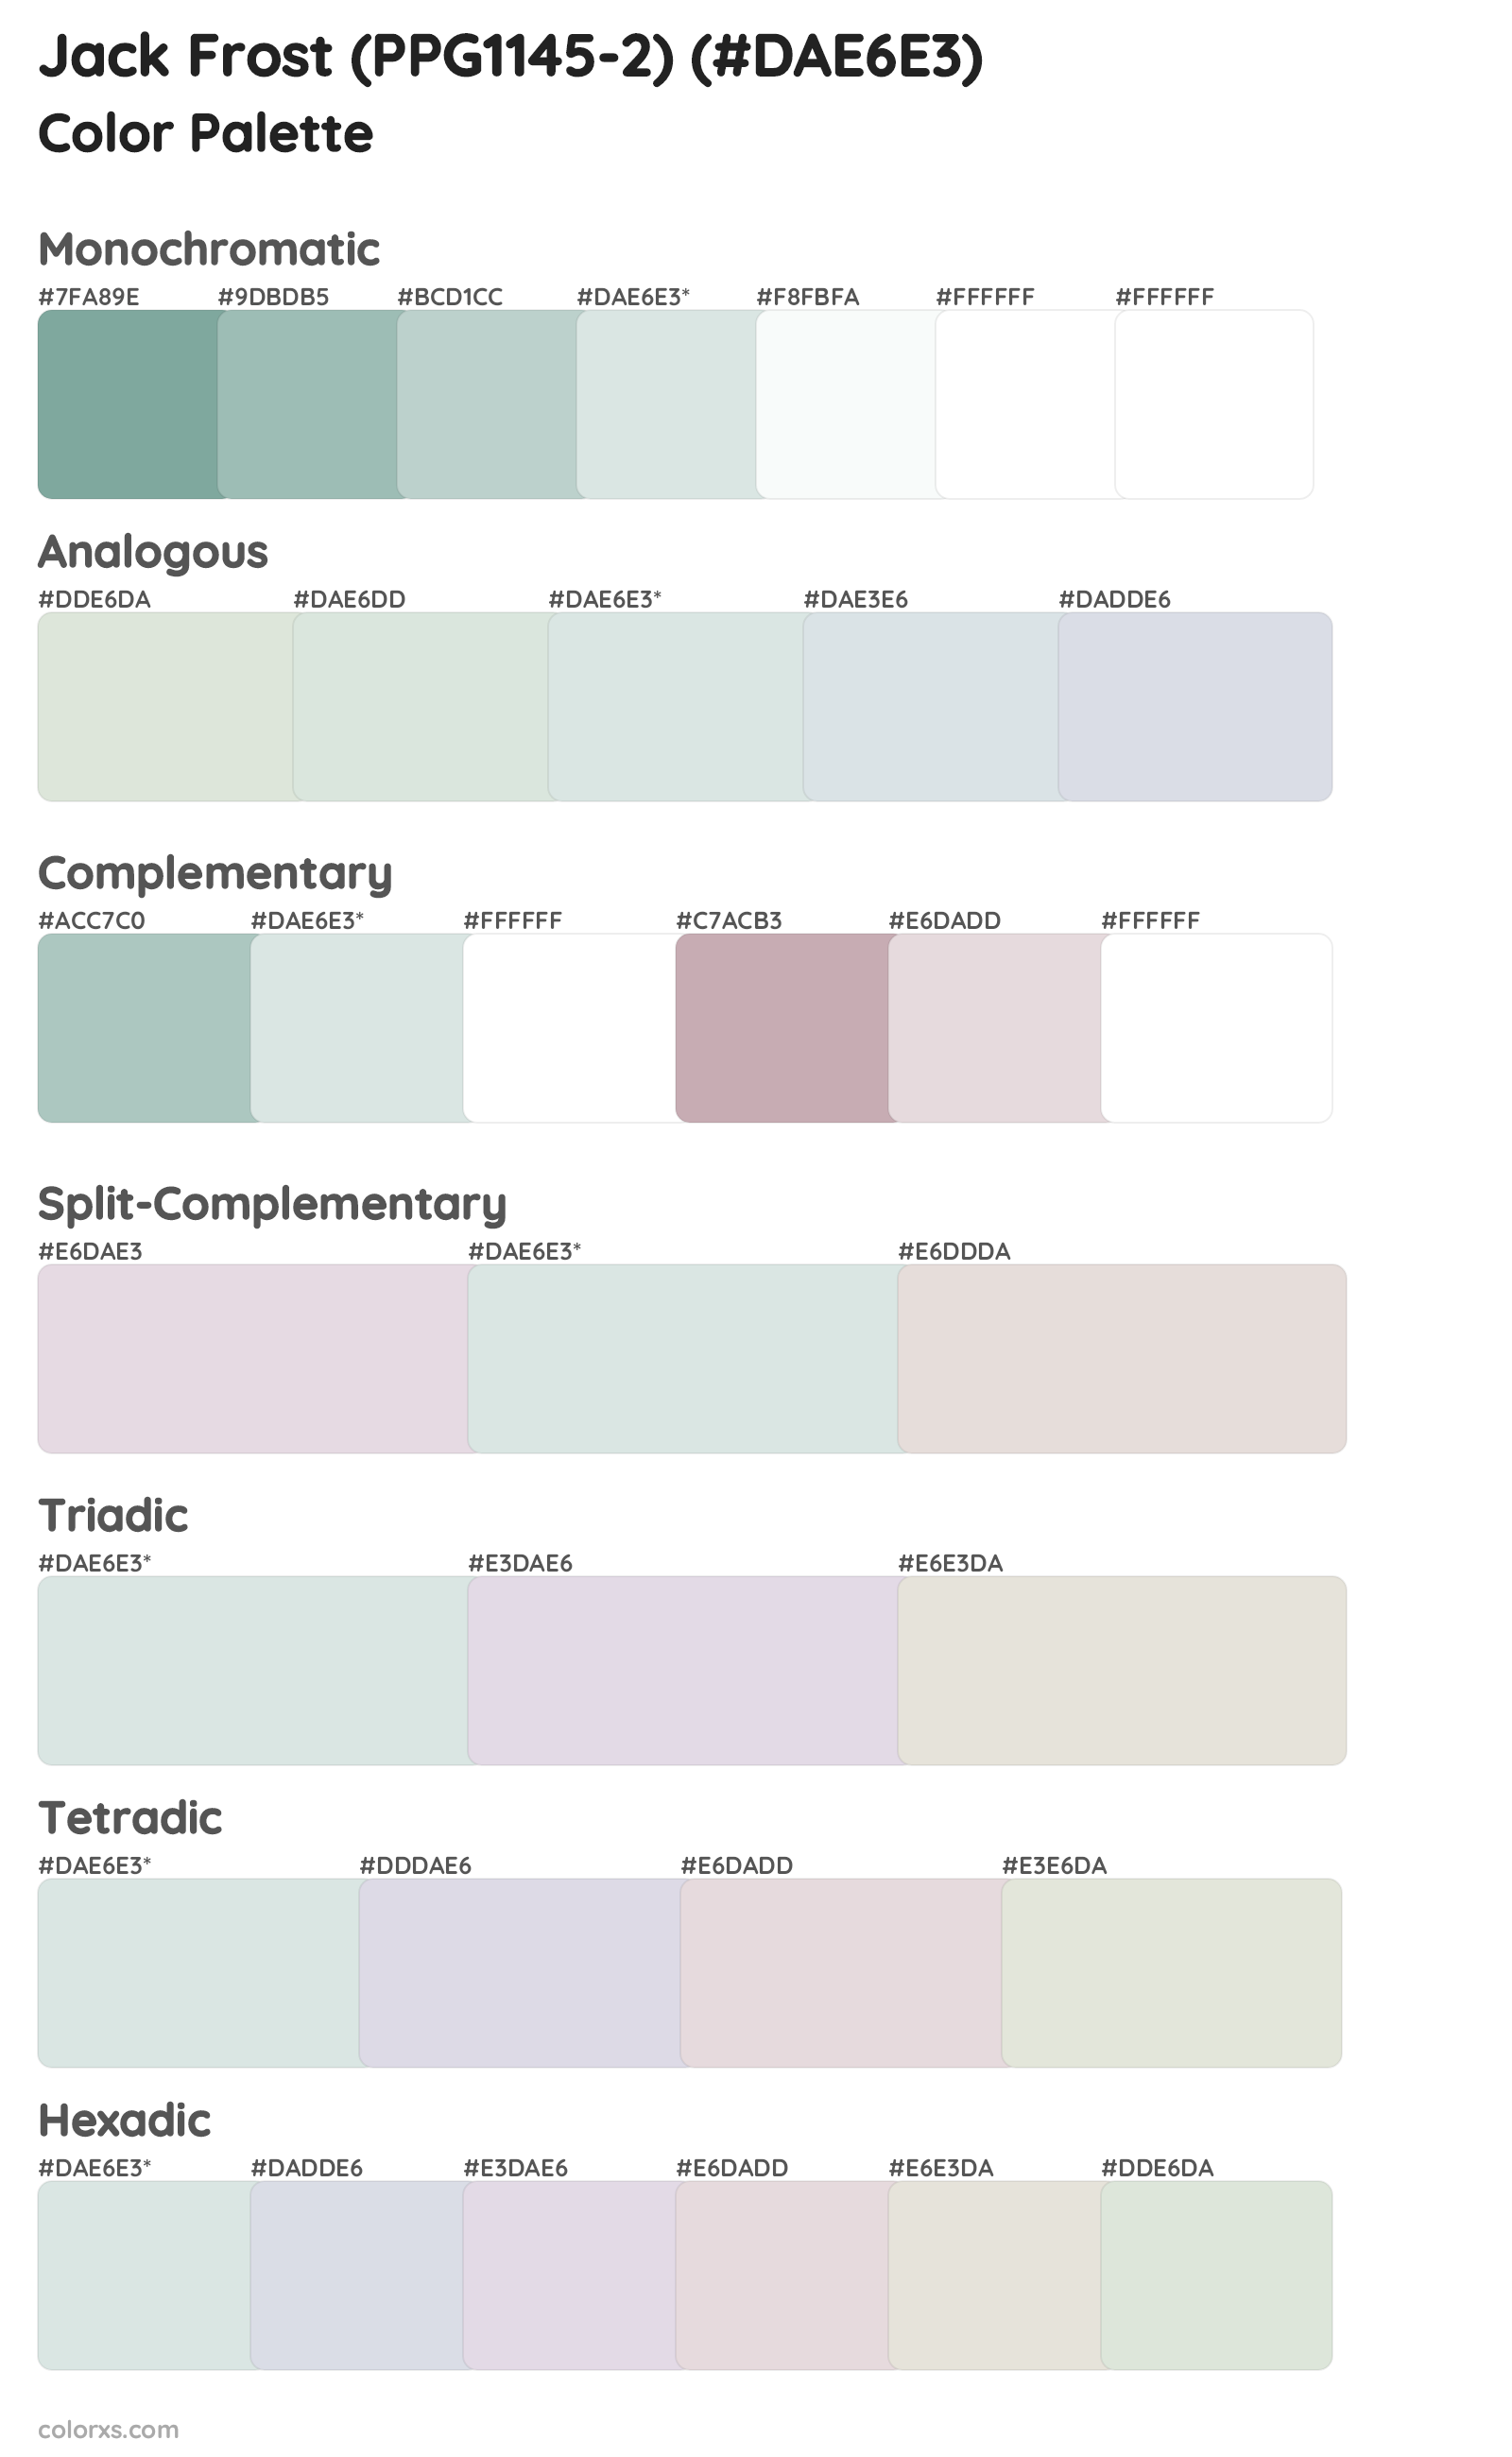 Jack Frost (PPG1145-2) Color Scheme Palettes